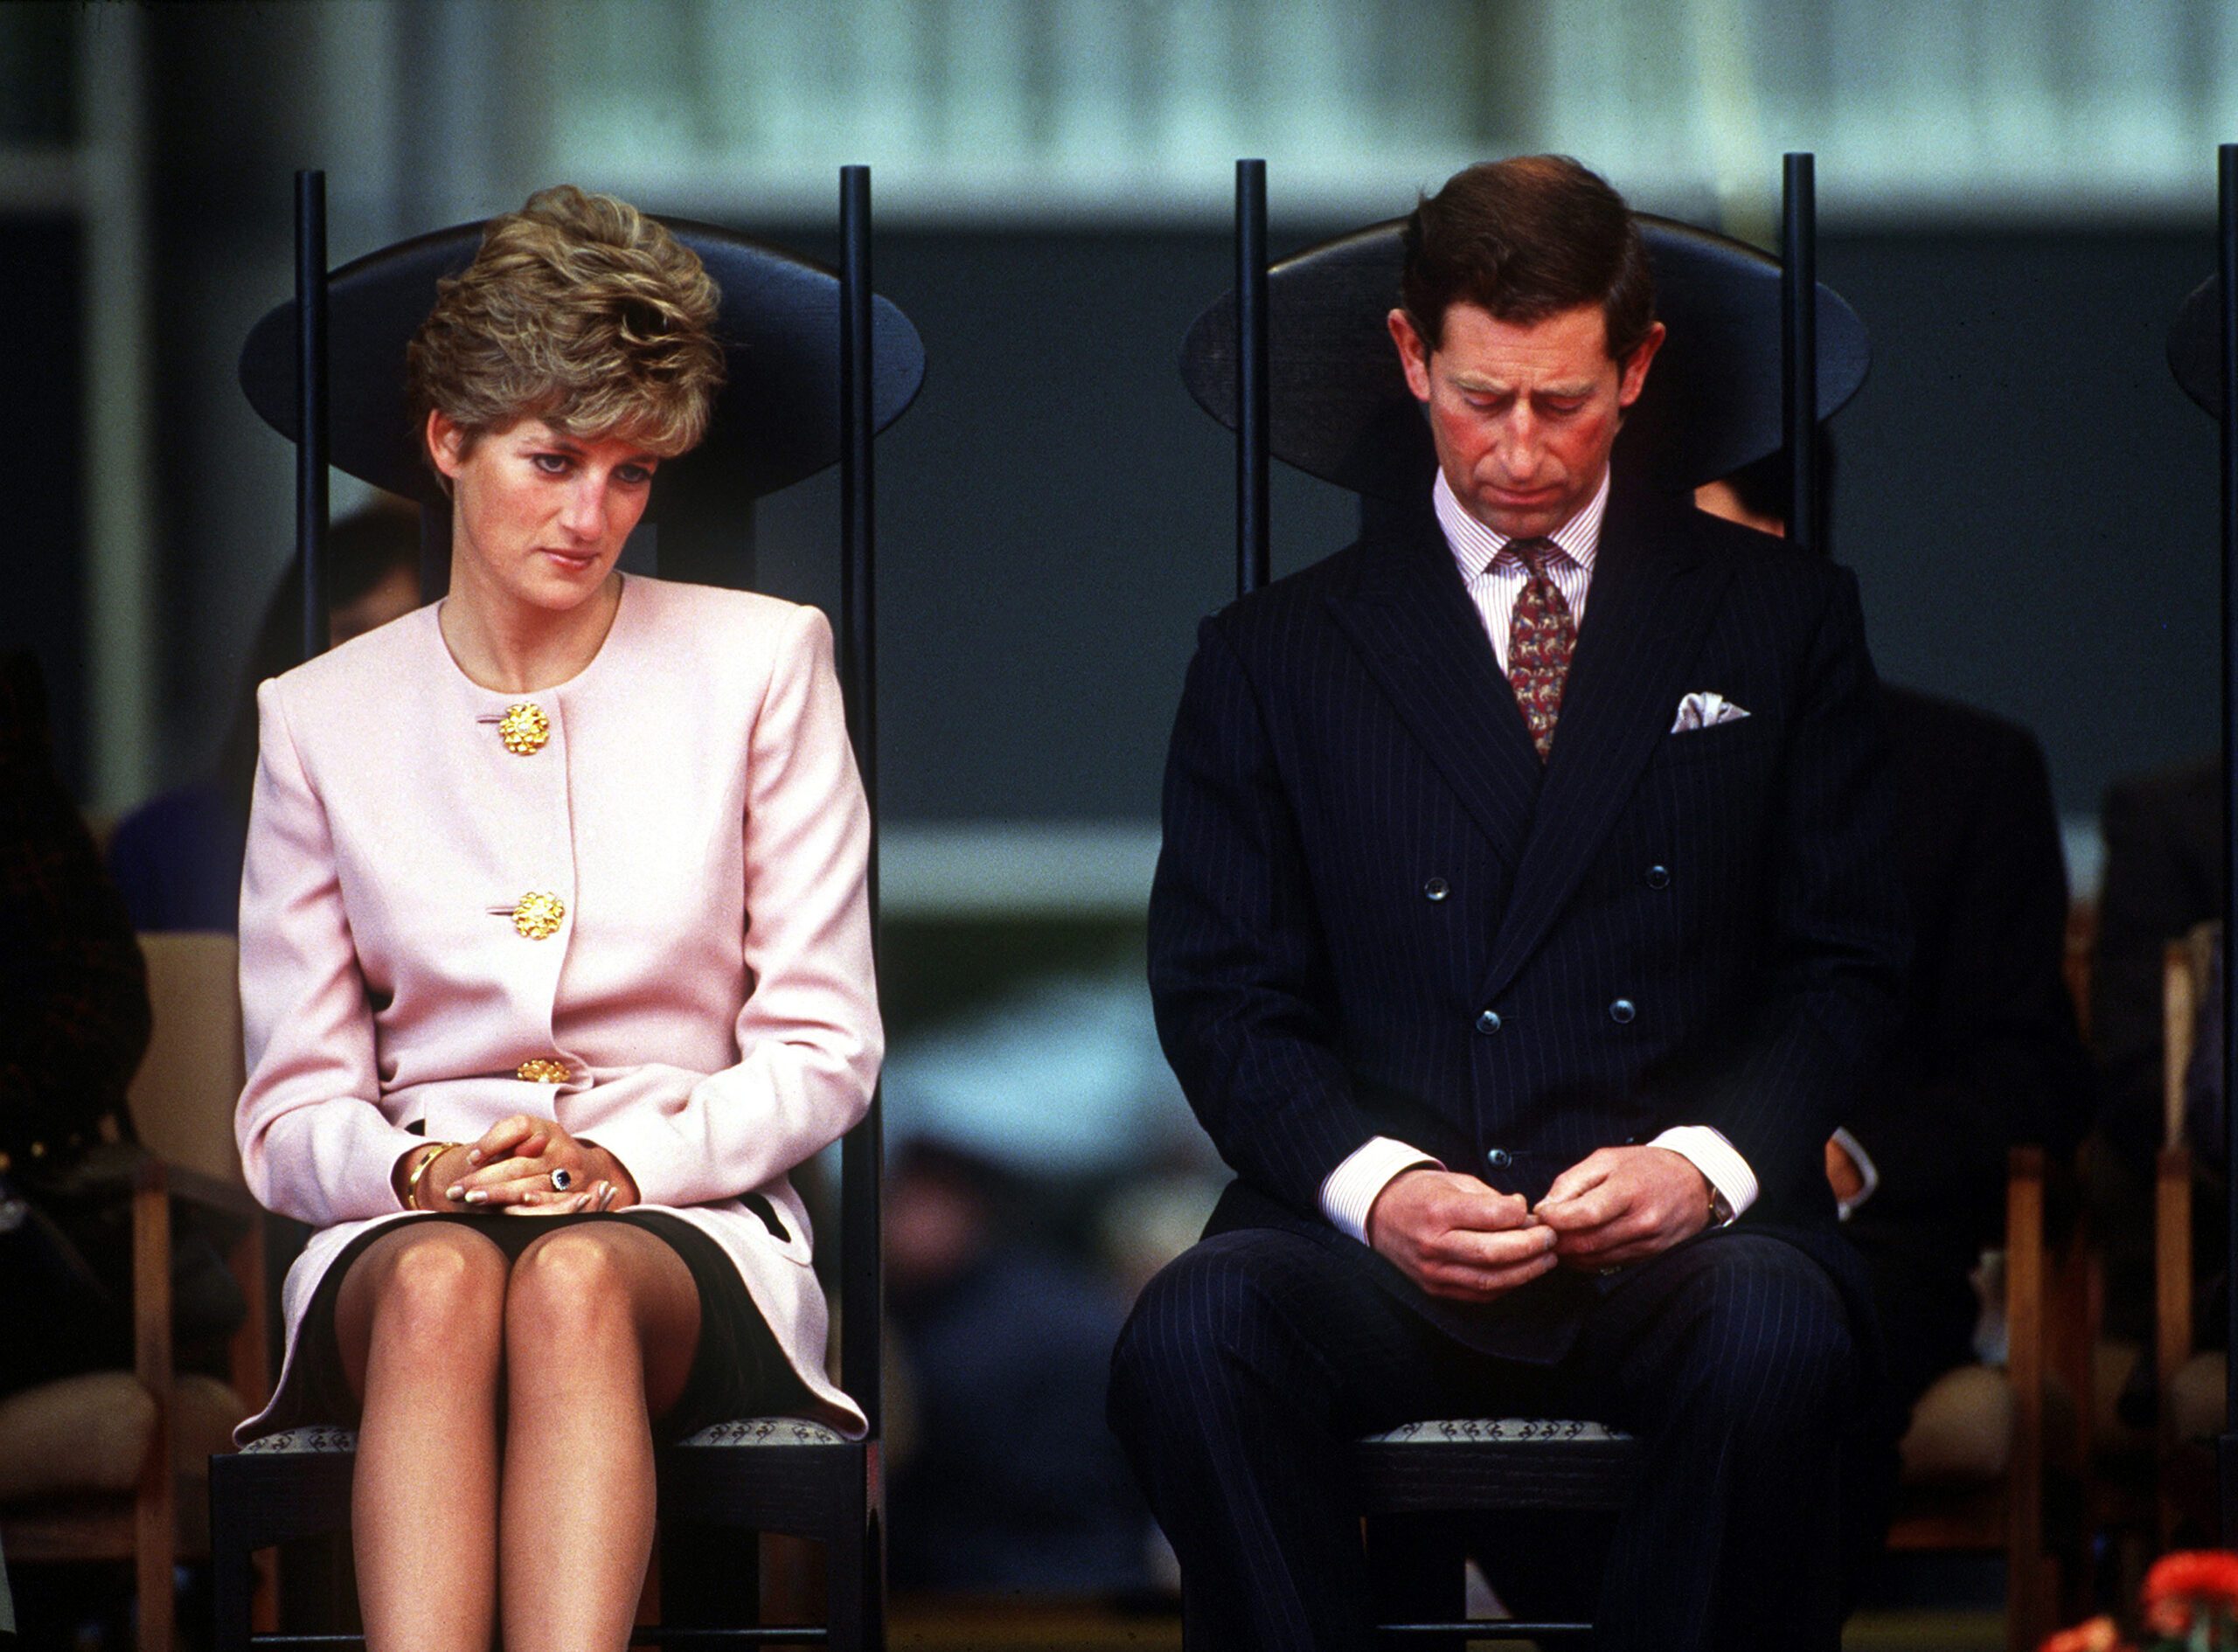 Diana: Ein Interview erschütterte die Monarchie